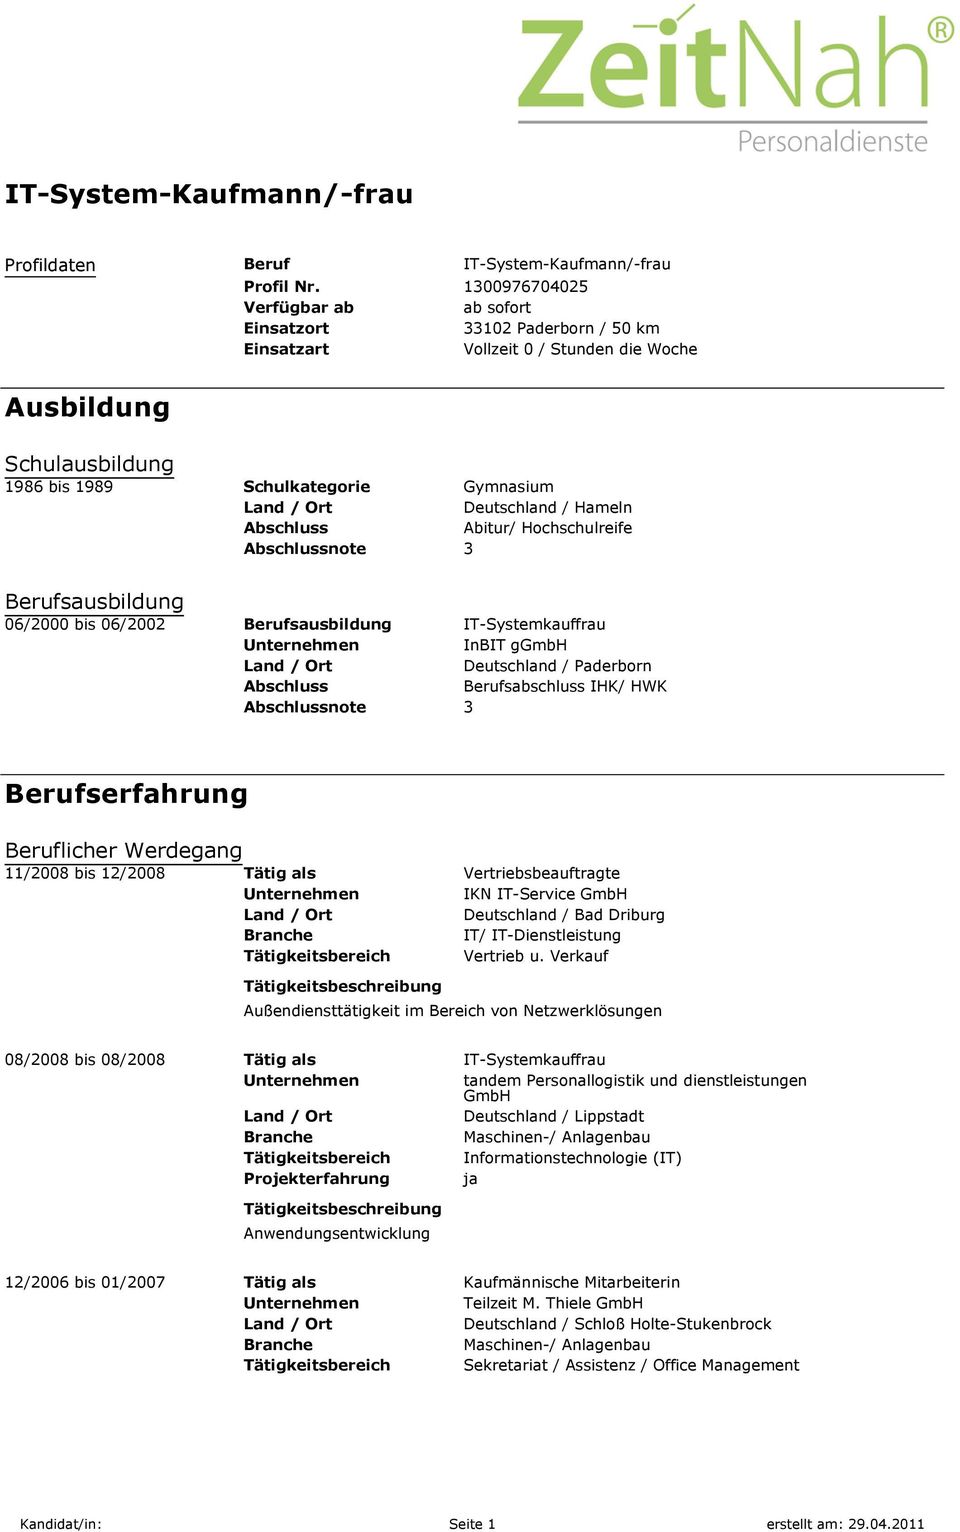 Hameln Abschluss Abitur/ Hochschulreife Abschlussnote 3 Berufsausbildung 06/2000 bis 06/2002 Berufsausbildung IT-Systemkauffrau Unternehmen InBIT ggmbh Deutschland / Paderborn Abschluss